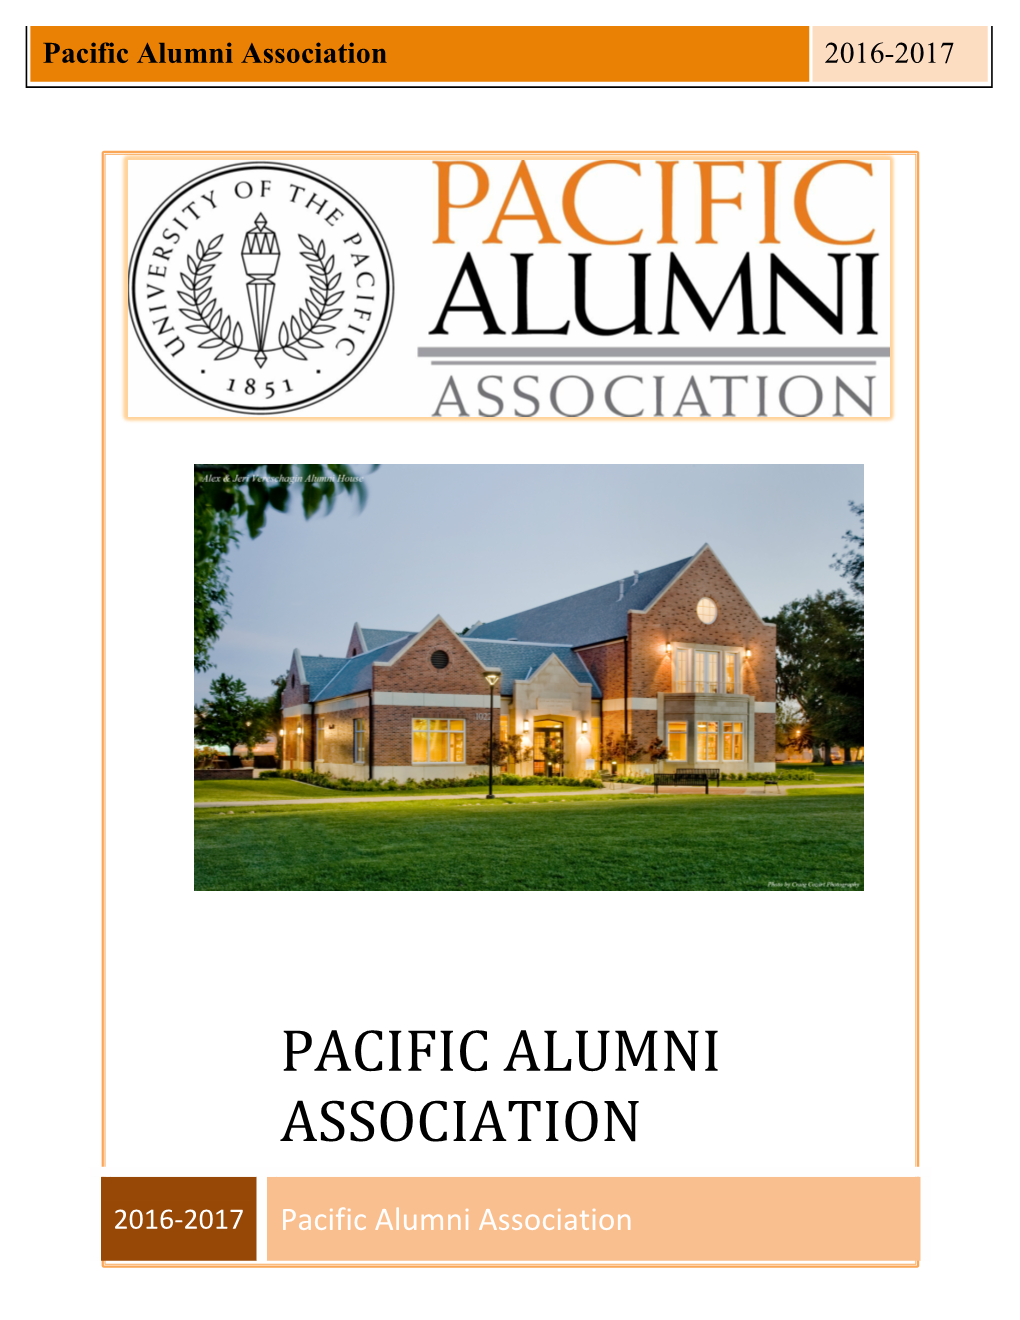 Pacific Alumni Association Club Contacts 2016-17